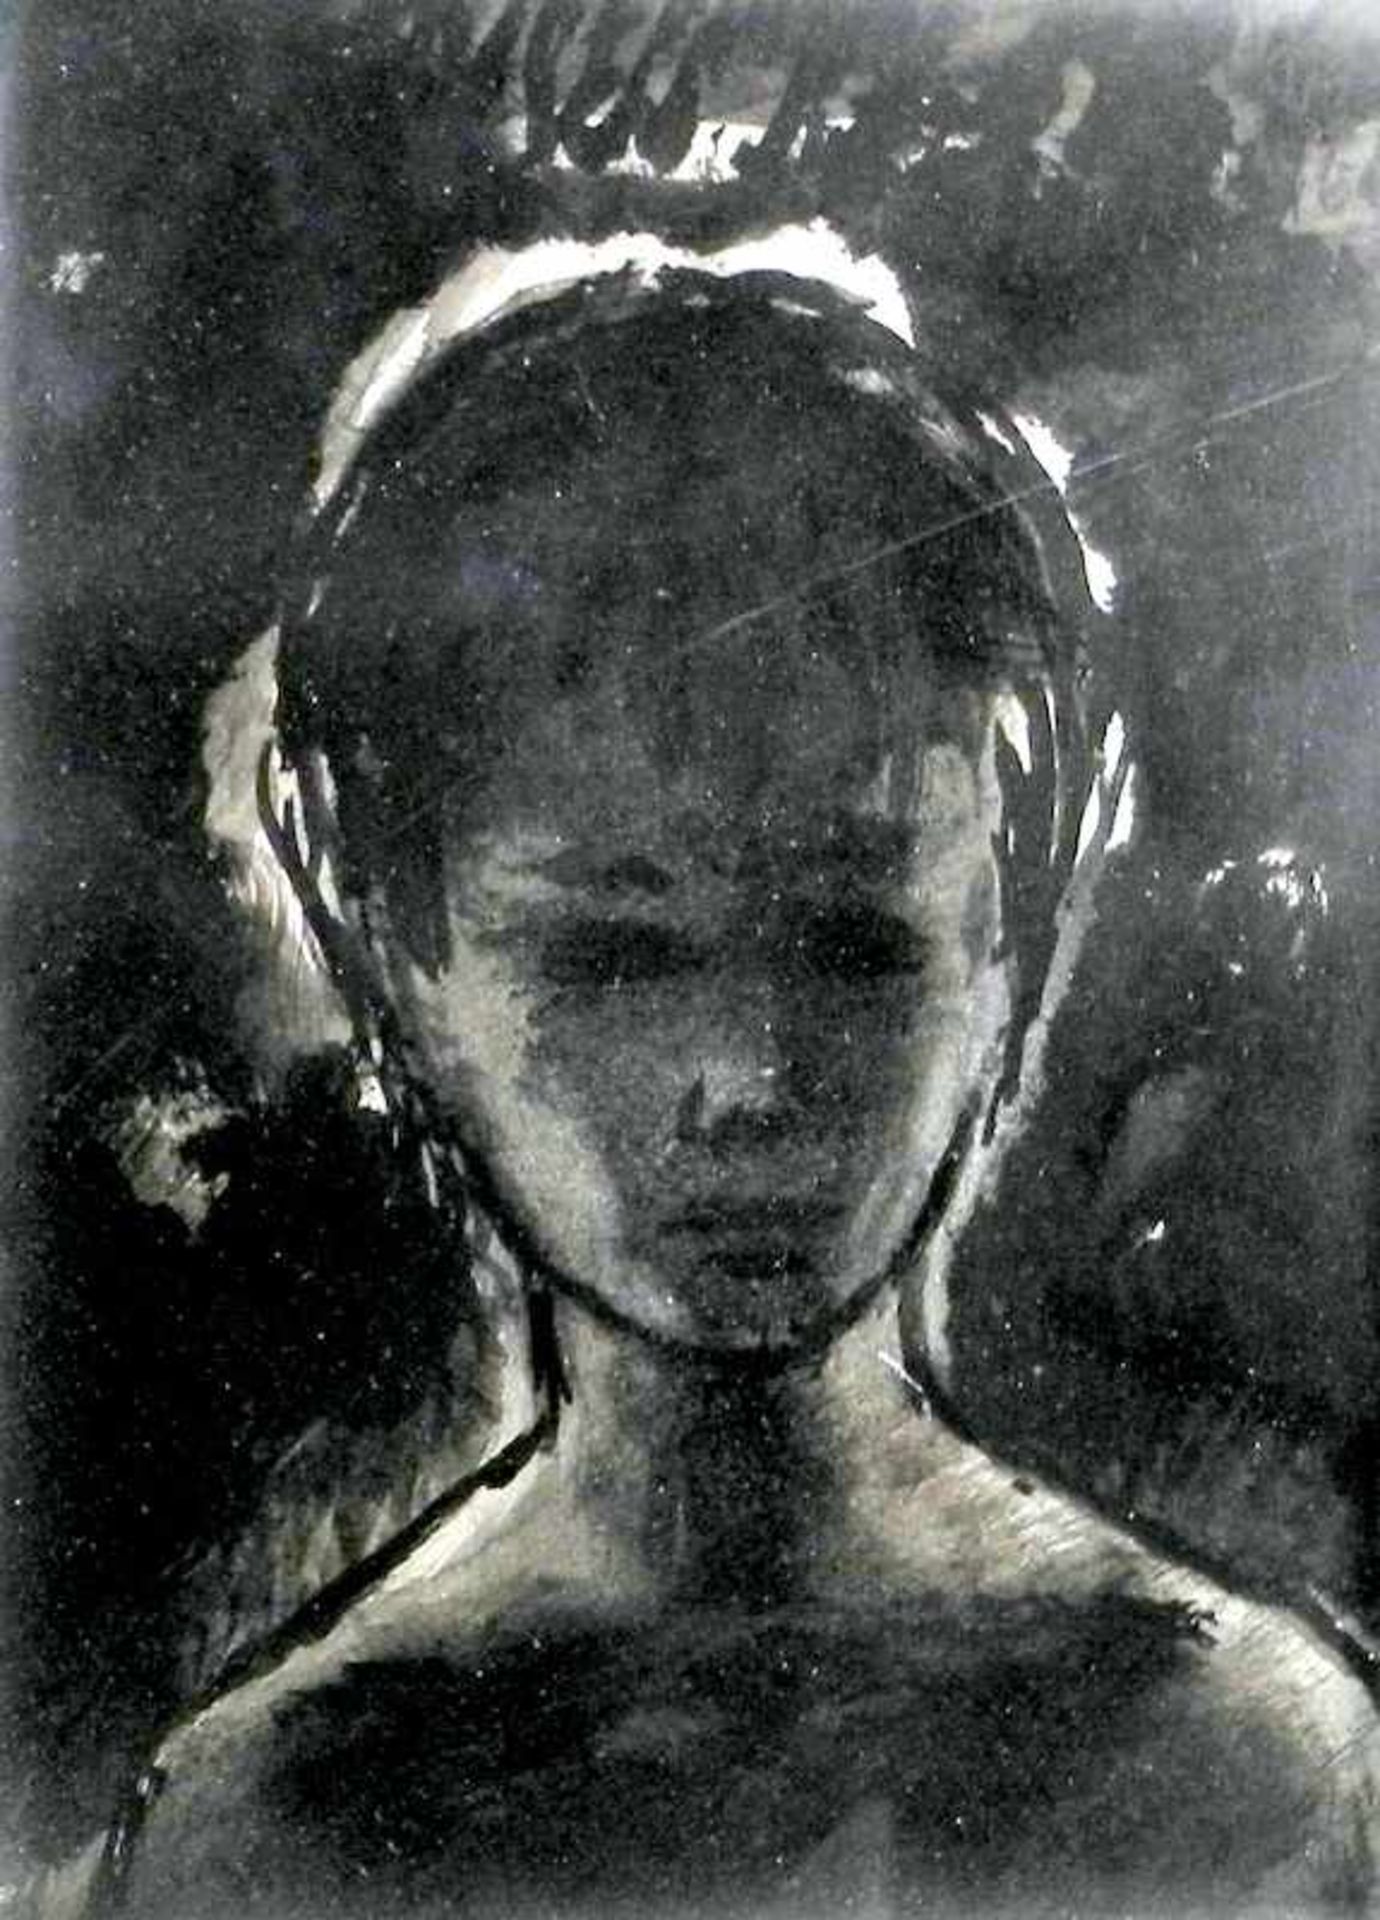 Porträt eines JünglingsAquarell/Papier. Frontale Darstellung eines Kindes mit schwarz auf weißem